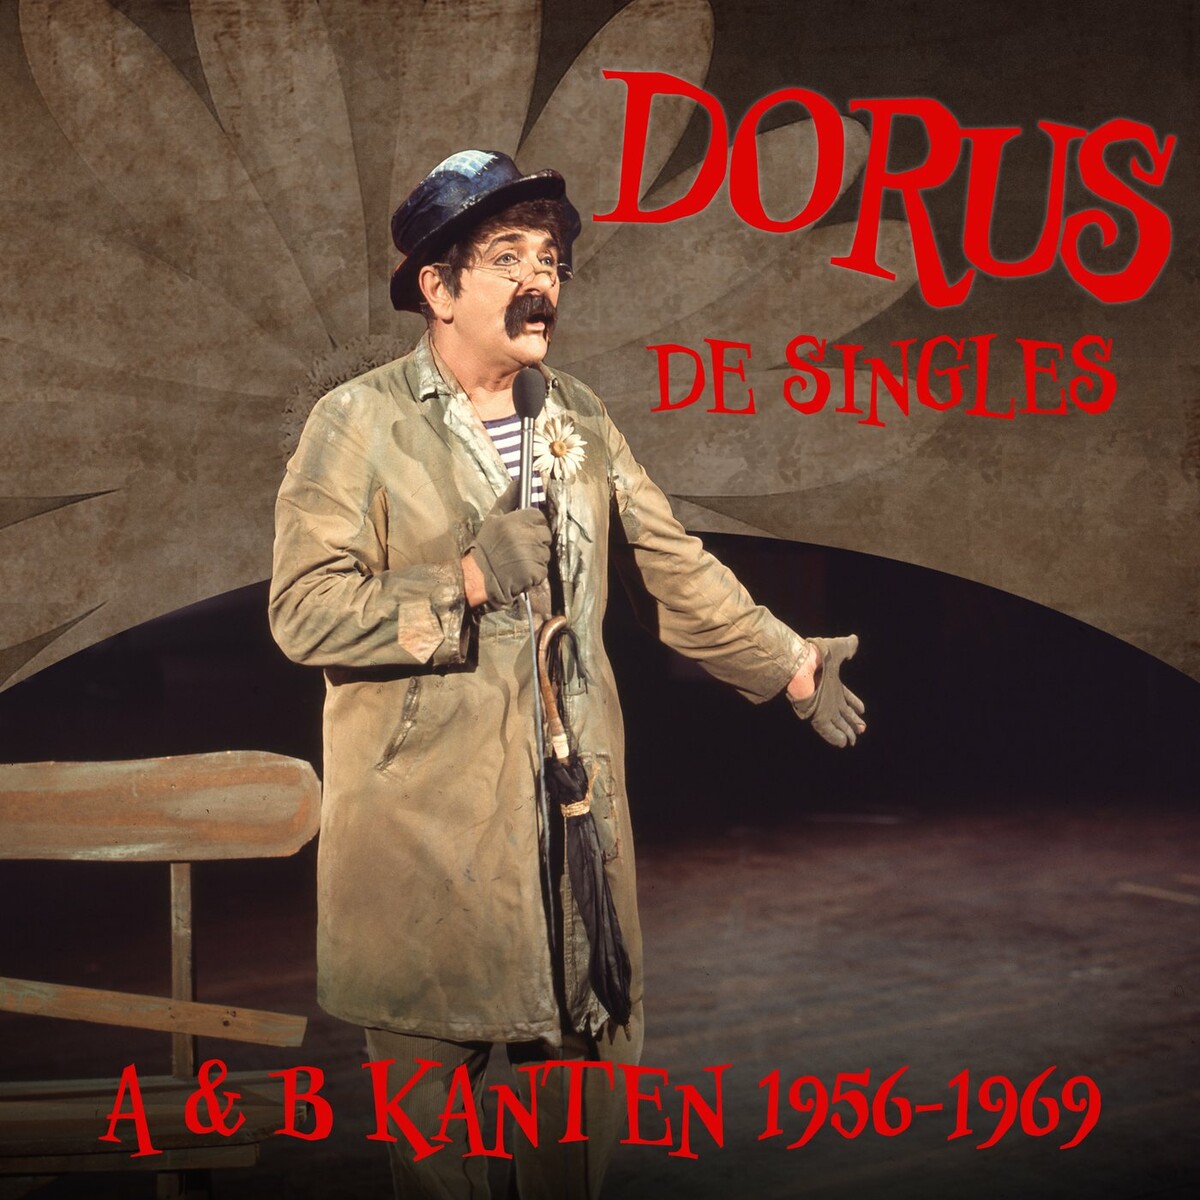 Dorus - De singles A & B Kanten 1956-1969